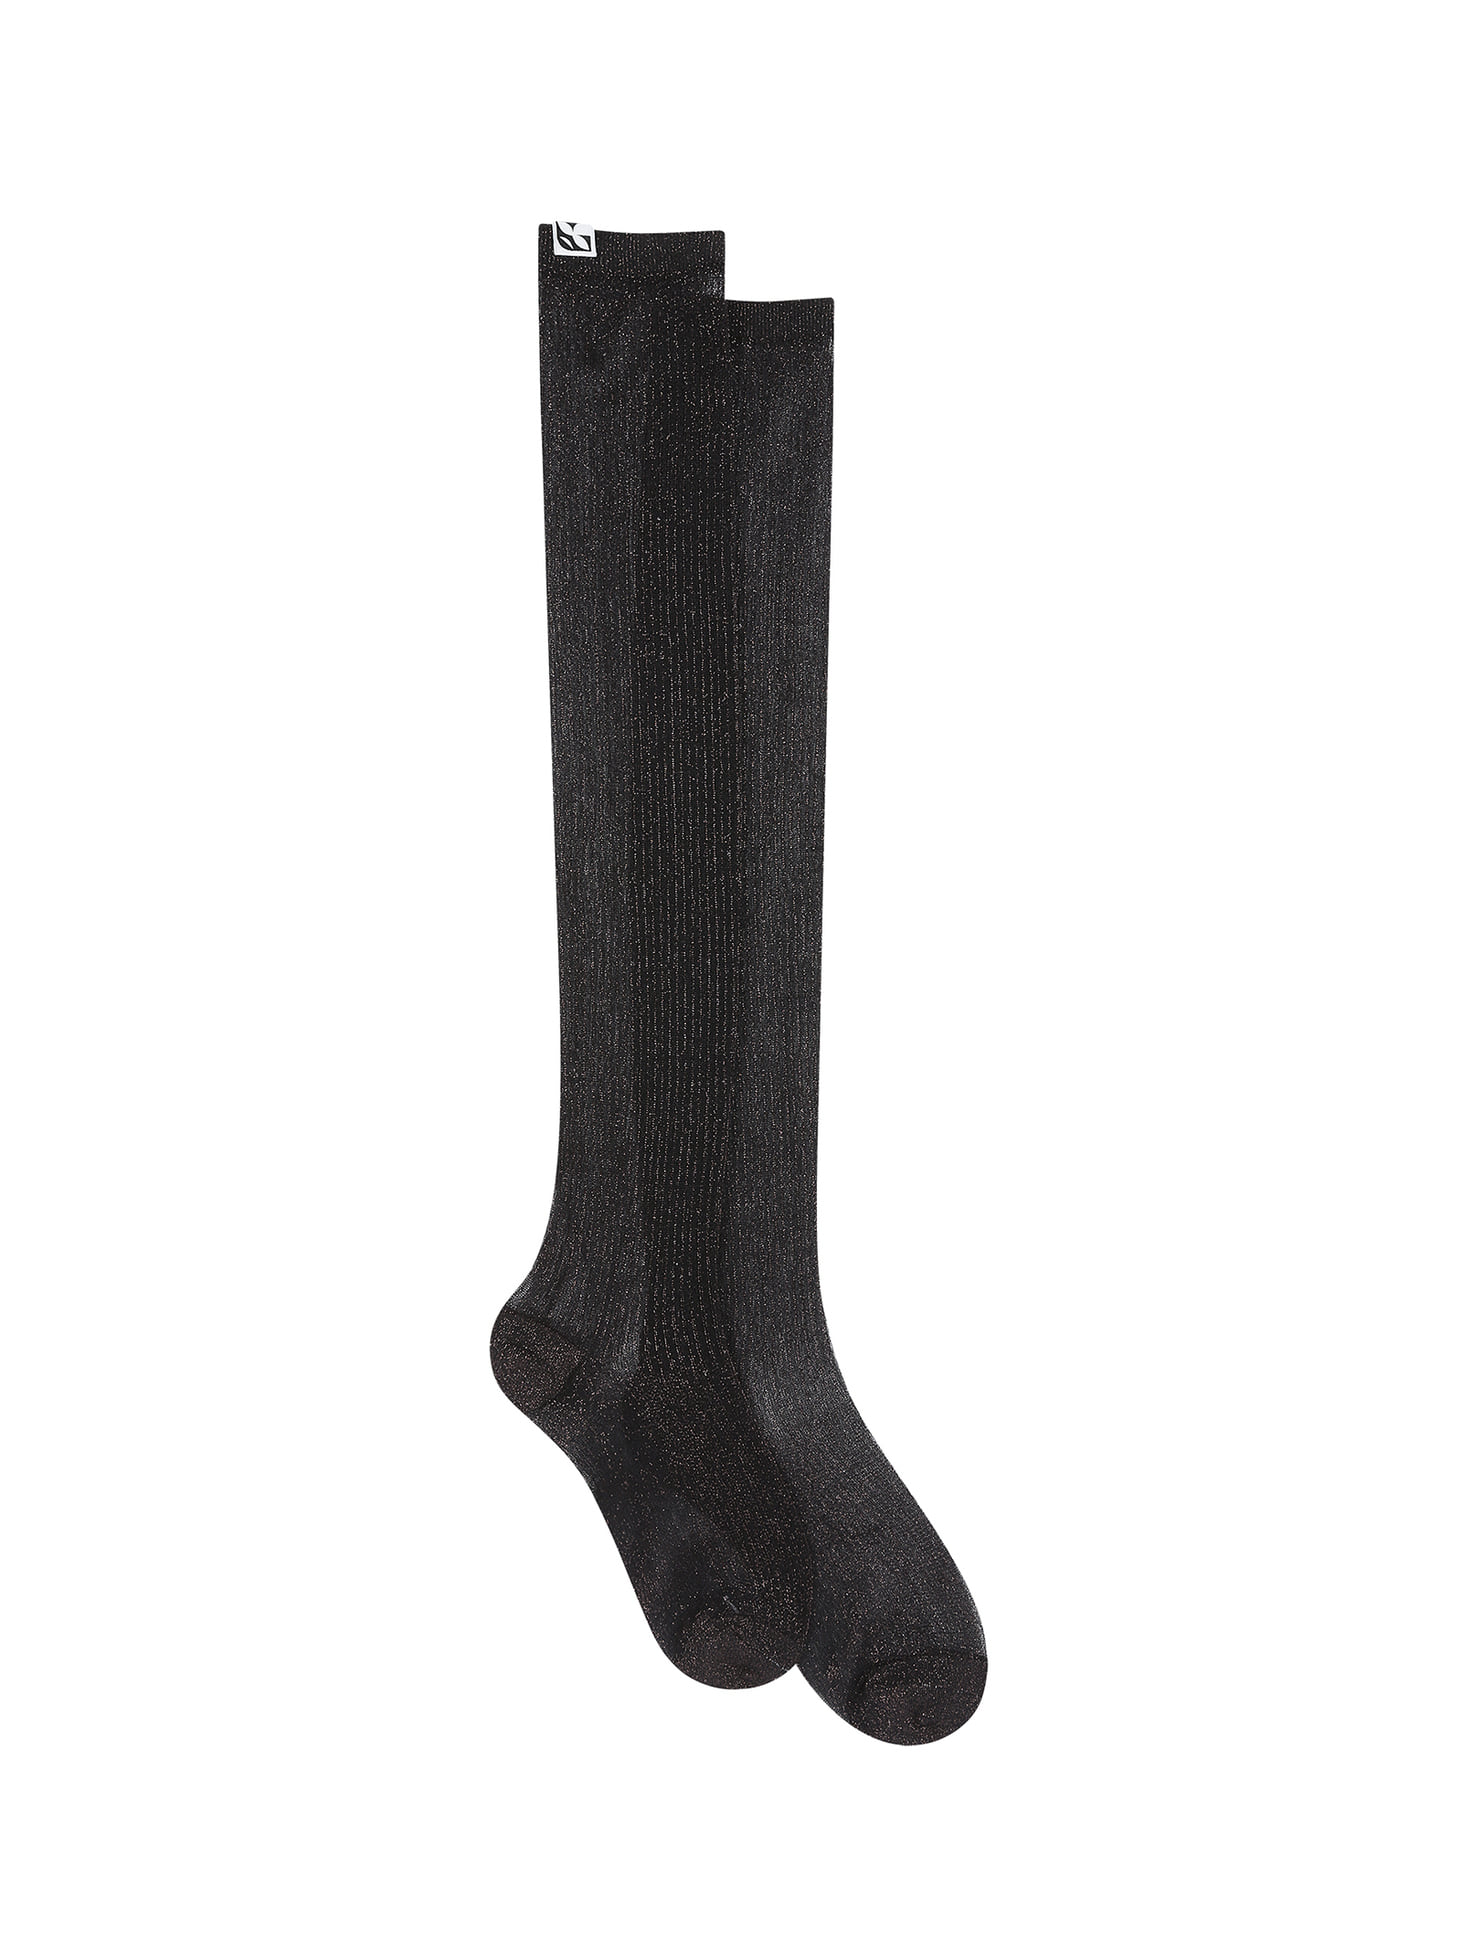 Semi-sheer long socks / Black